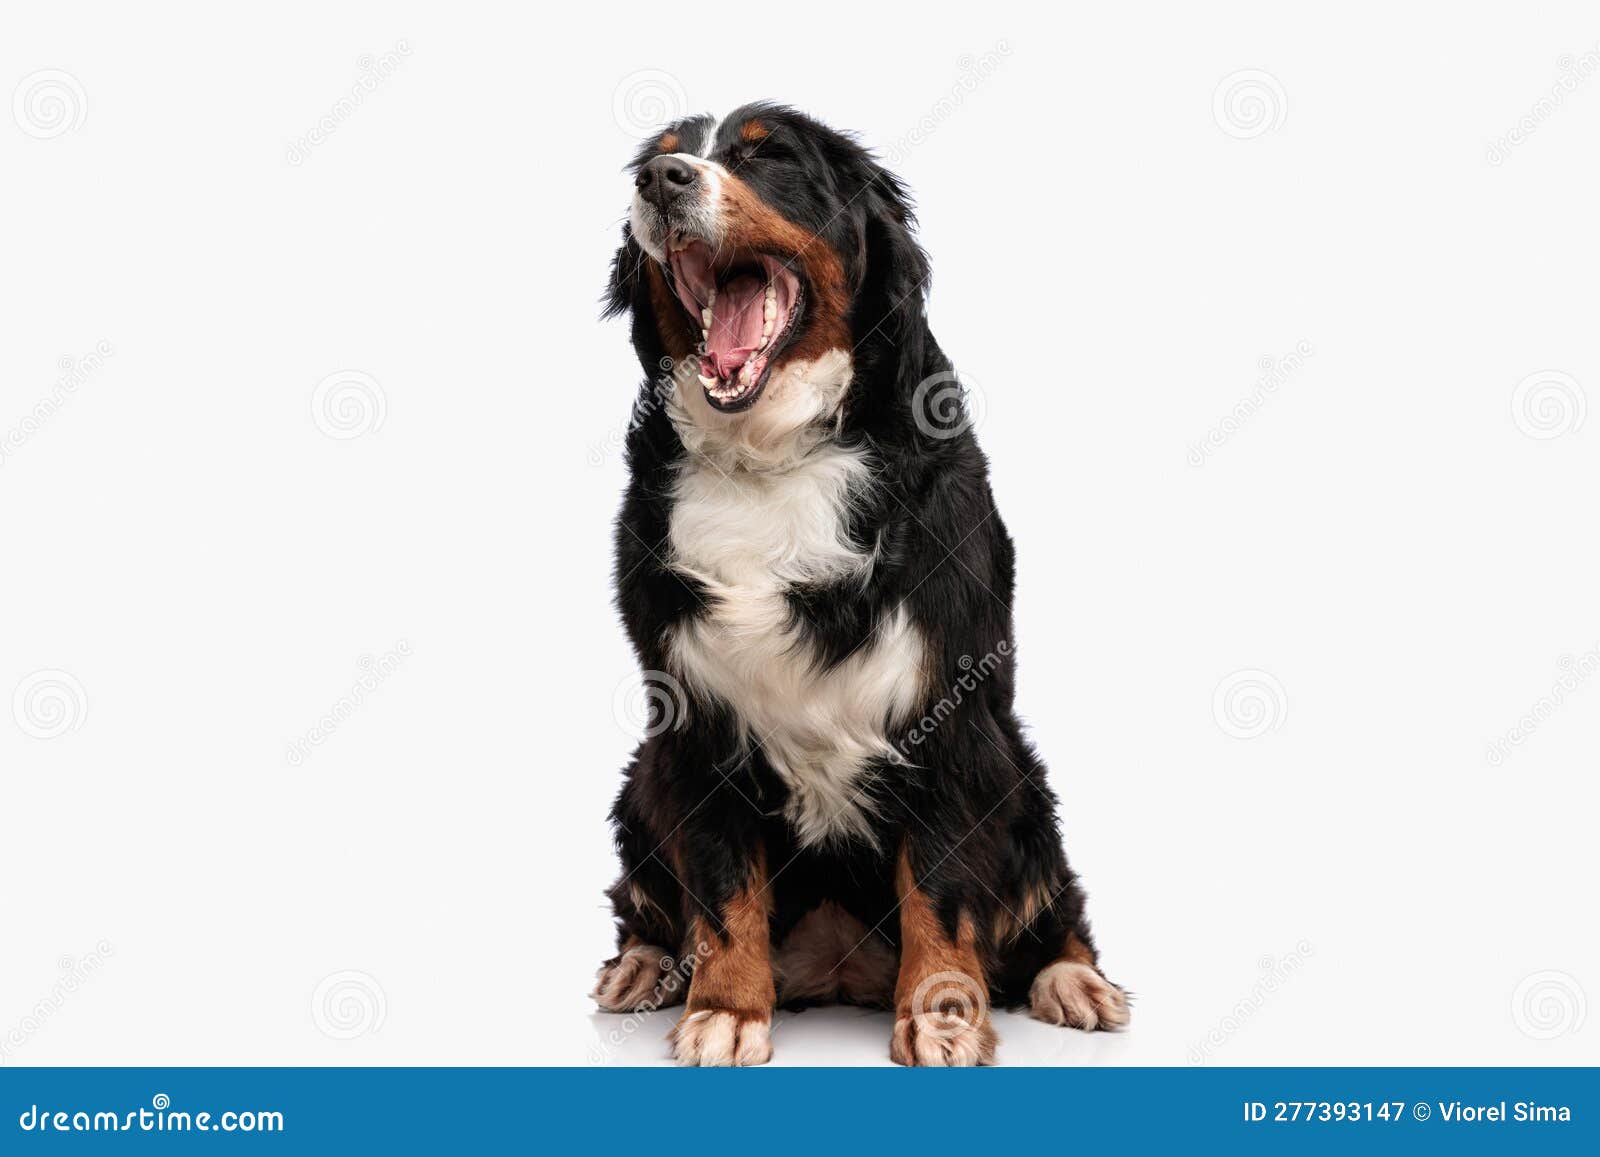 sleepy berna shephed dog opening mouth and yawning